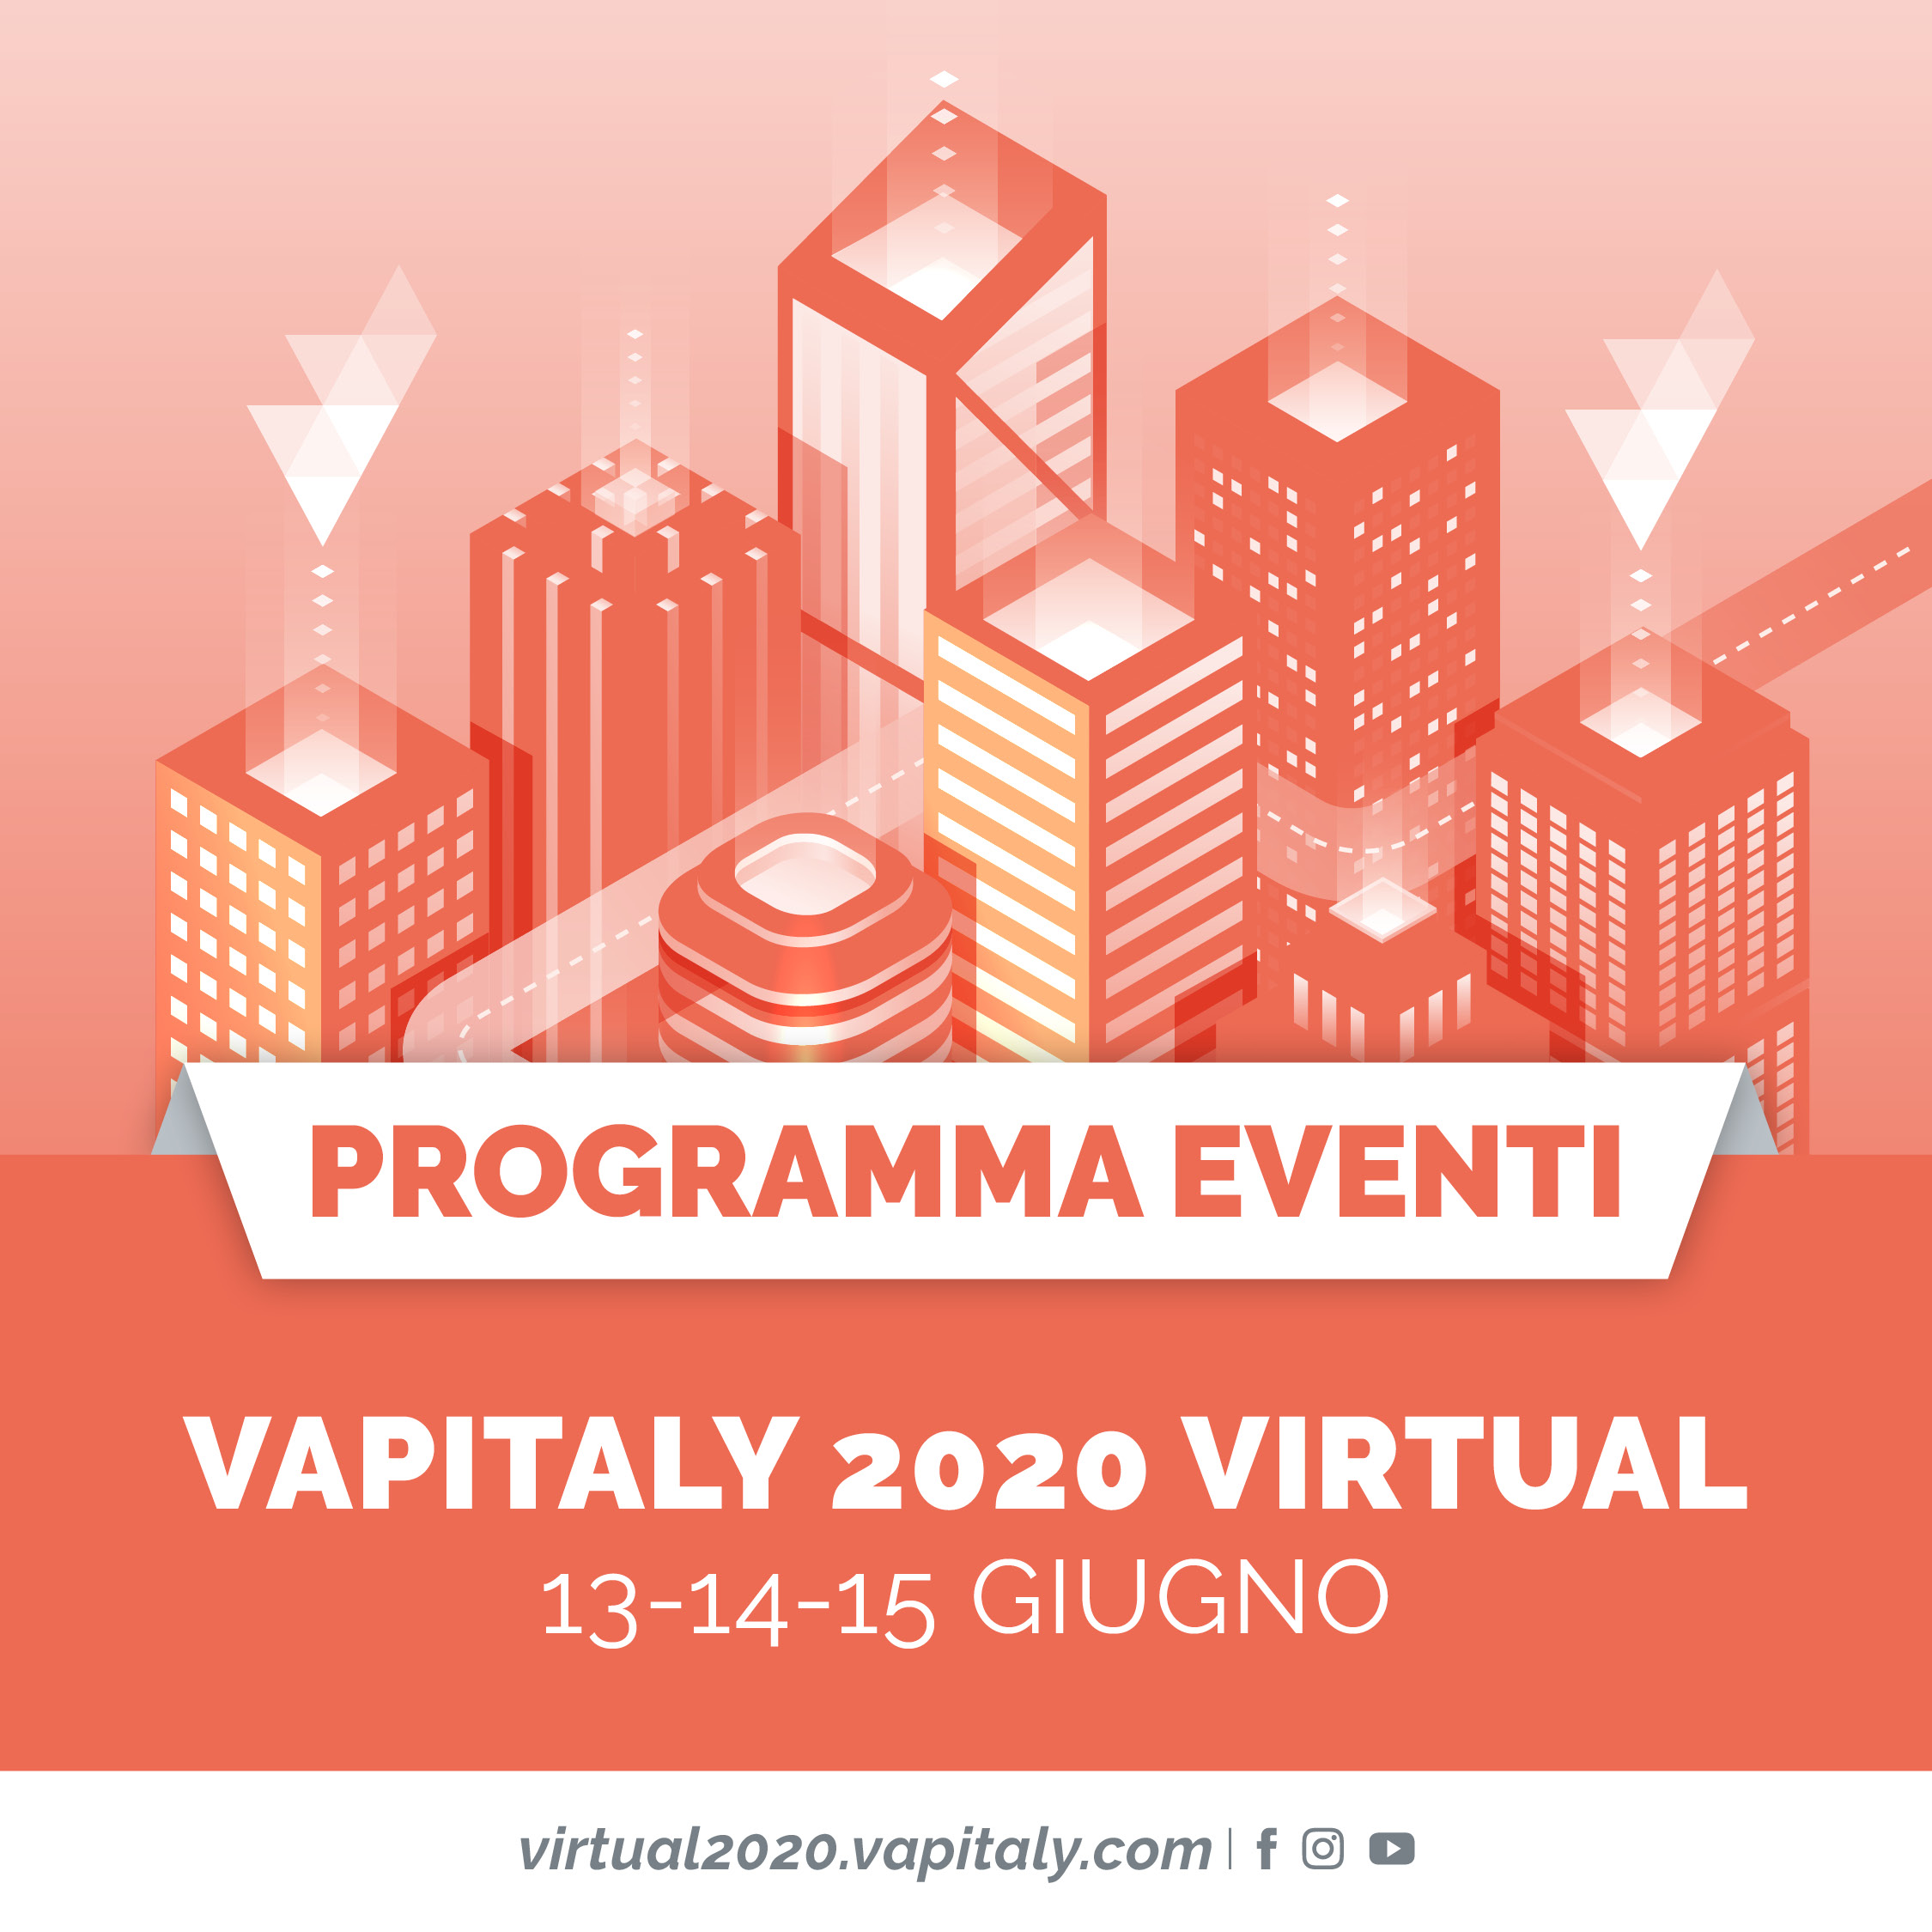 Vapitaly 2020 Virtual, il primo evento virtuale in Europa dedicato al settore Vaping, sta per iniziare!